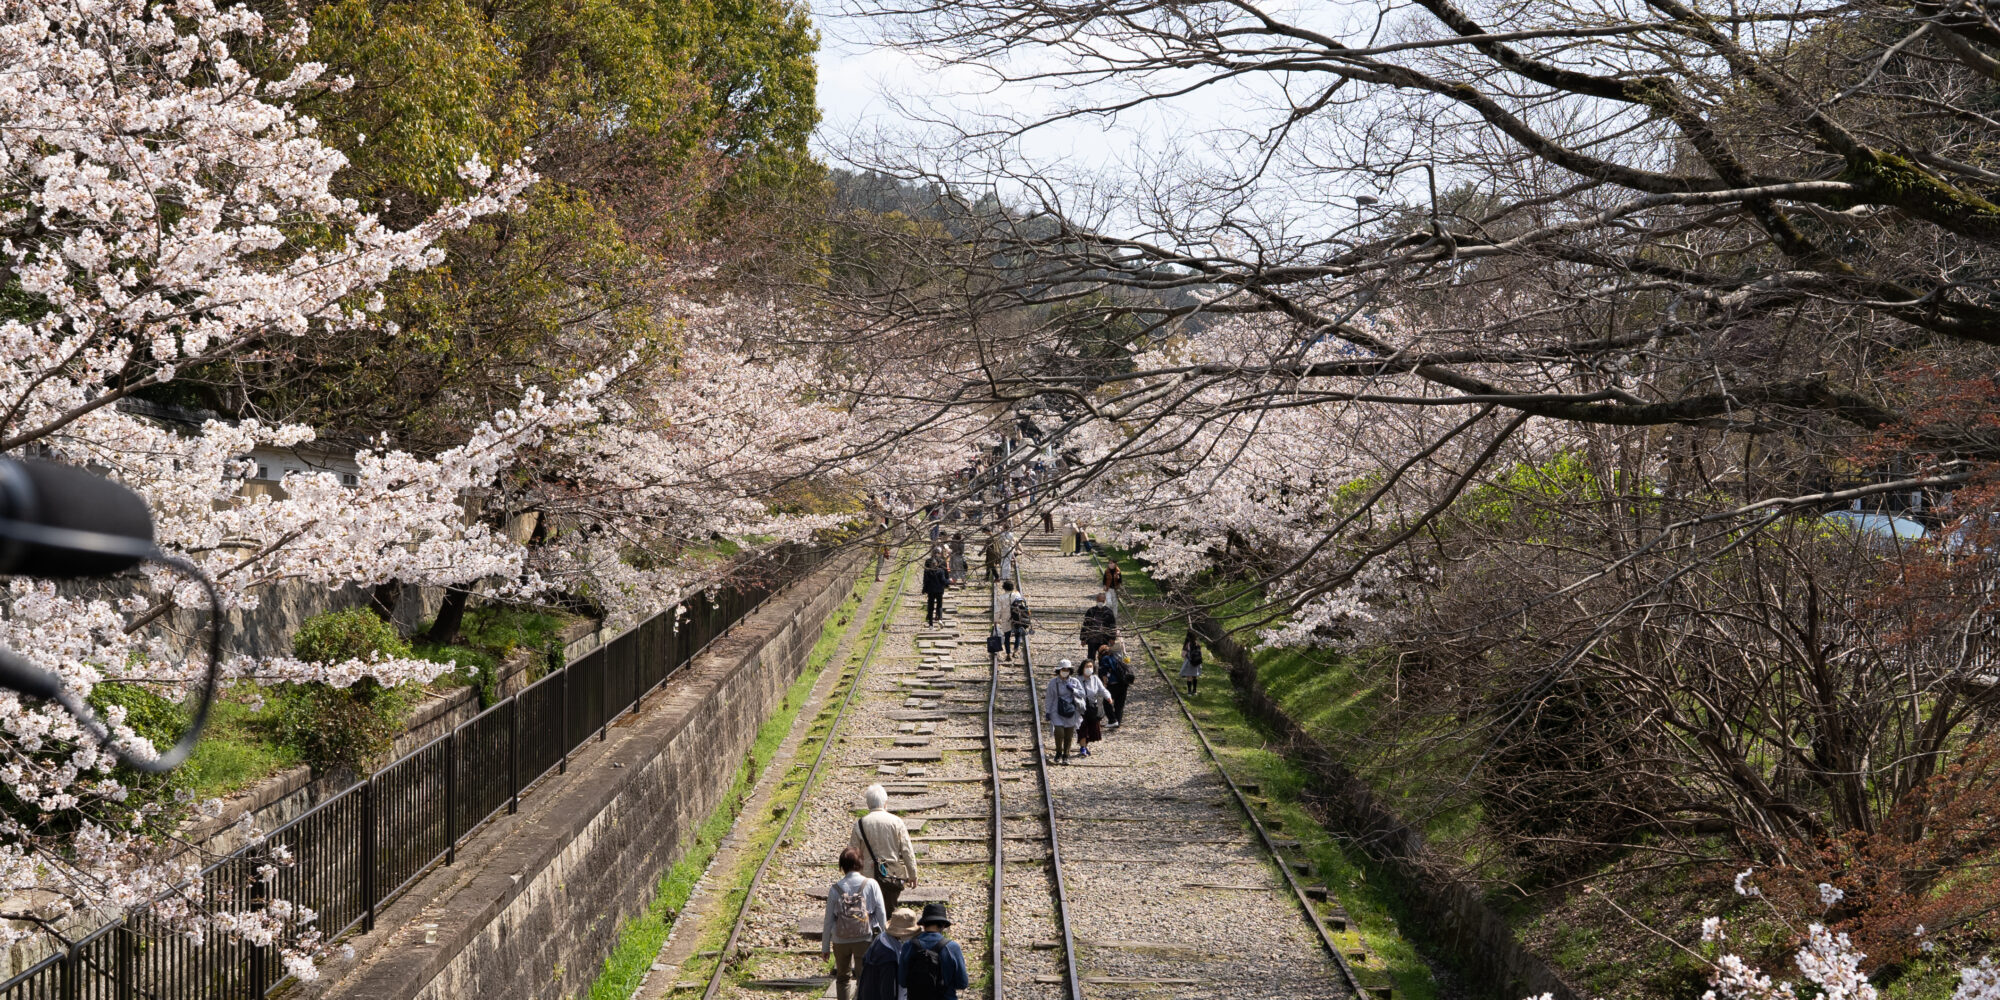 蹴上インクラインの桜と観光客 2021年3月撮影